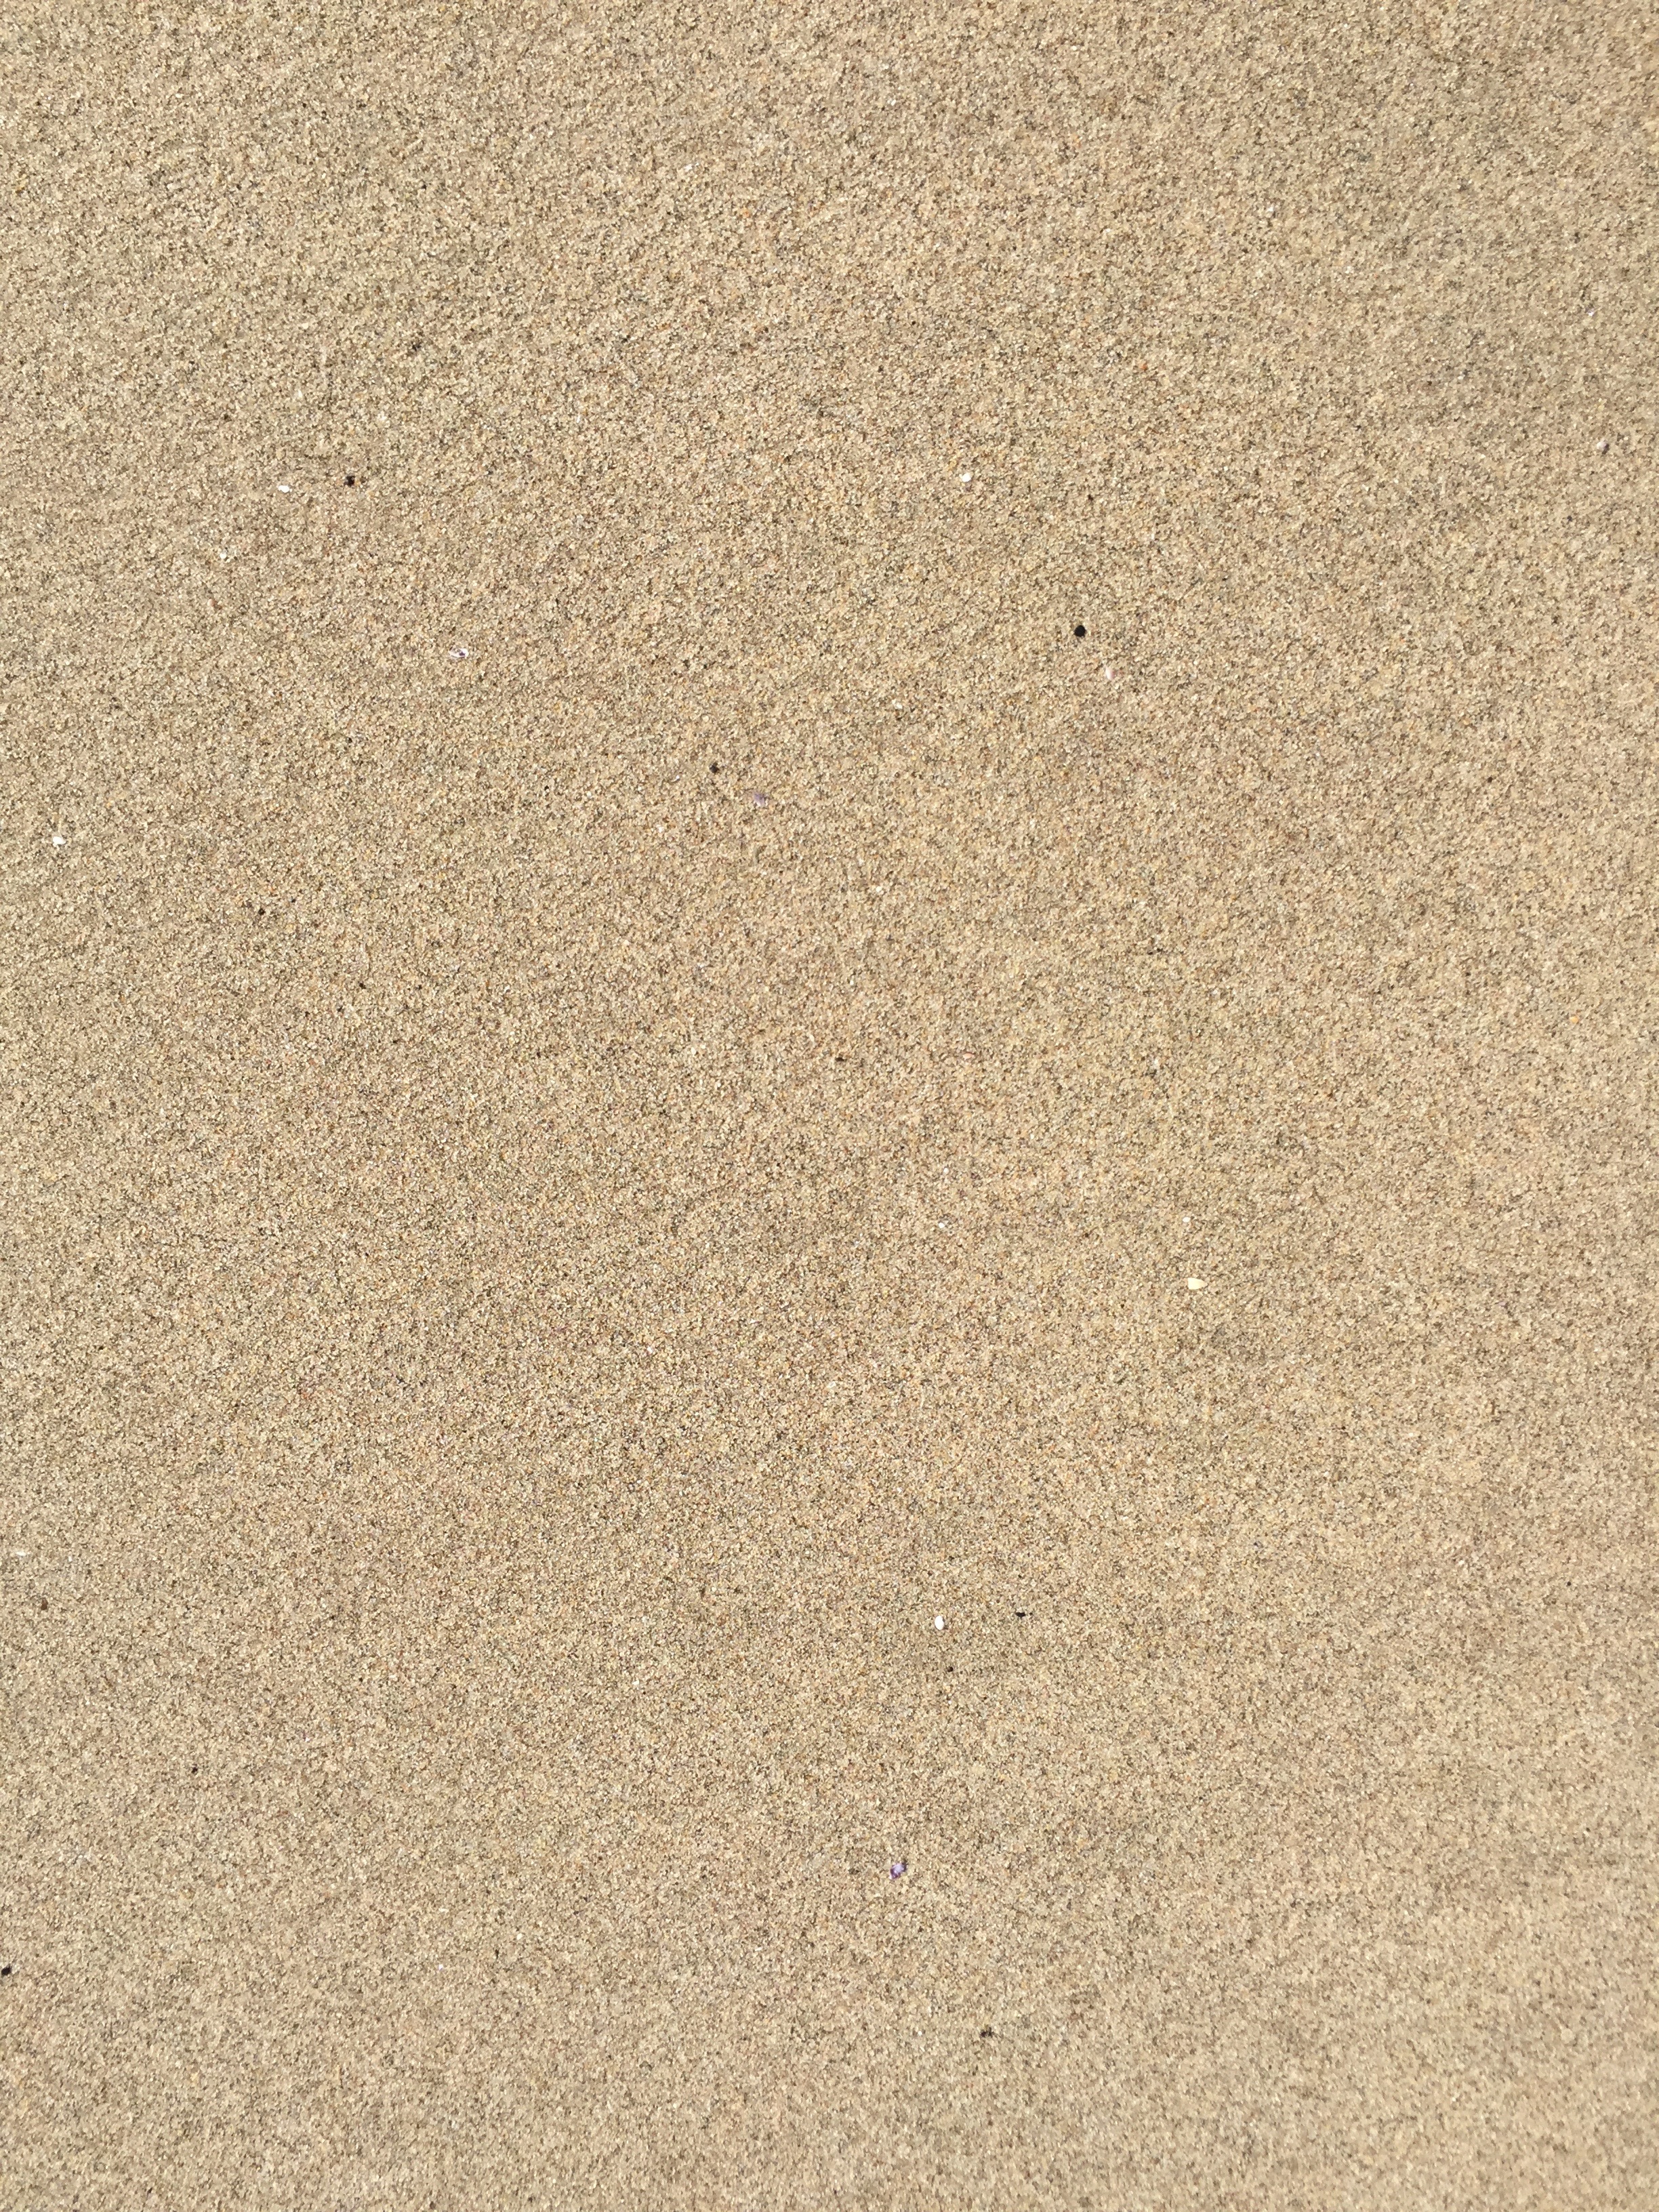 clipy sand